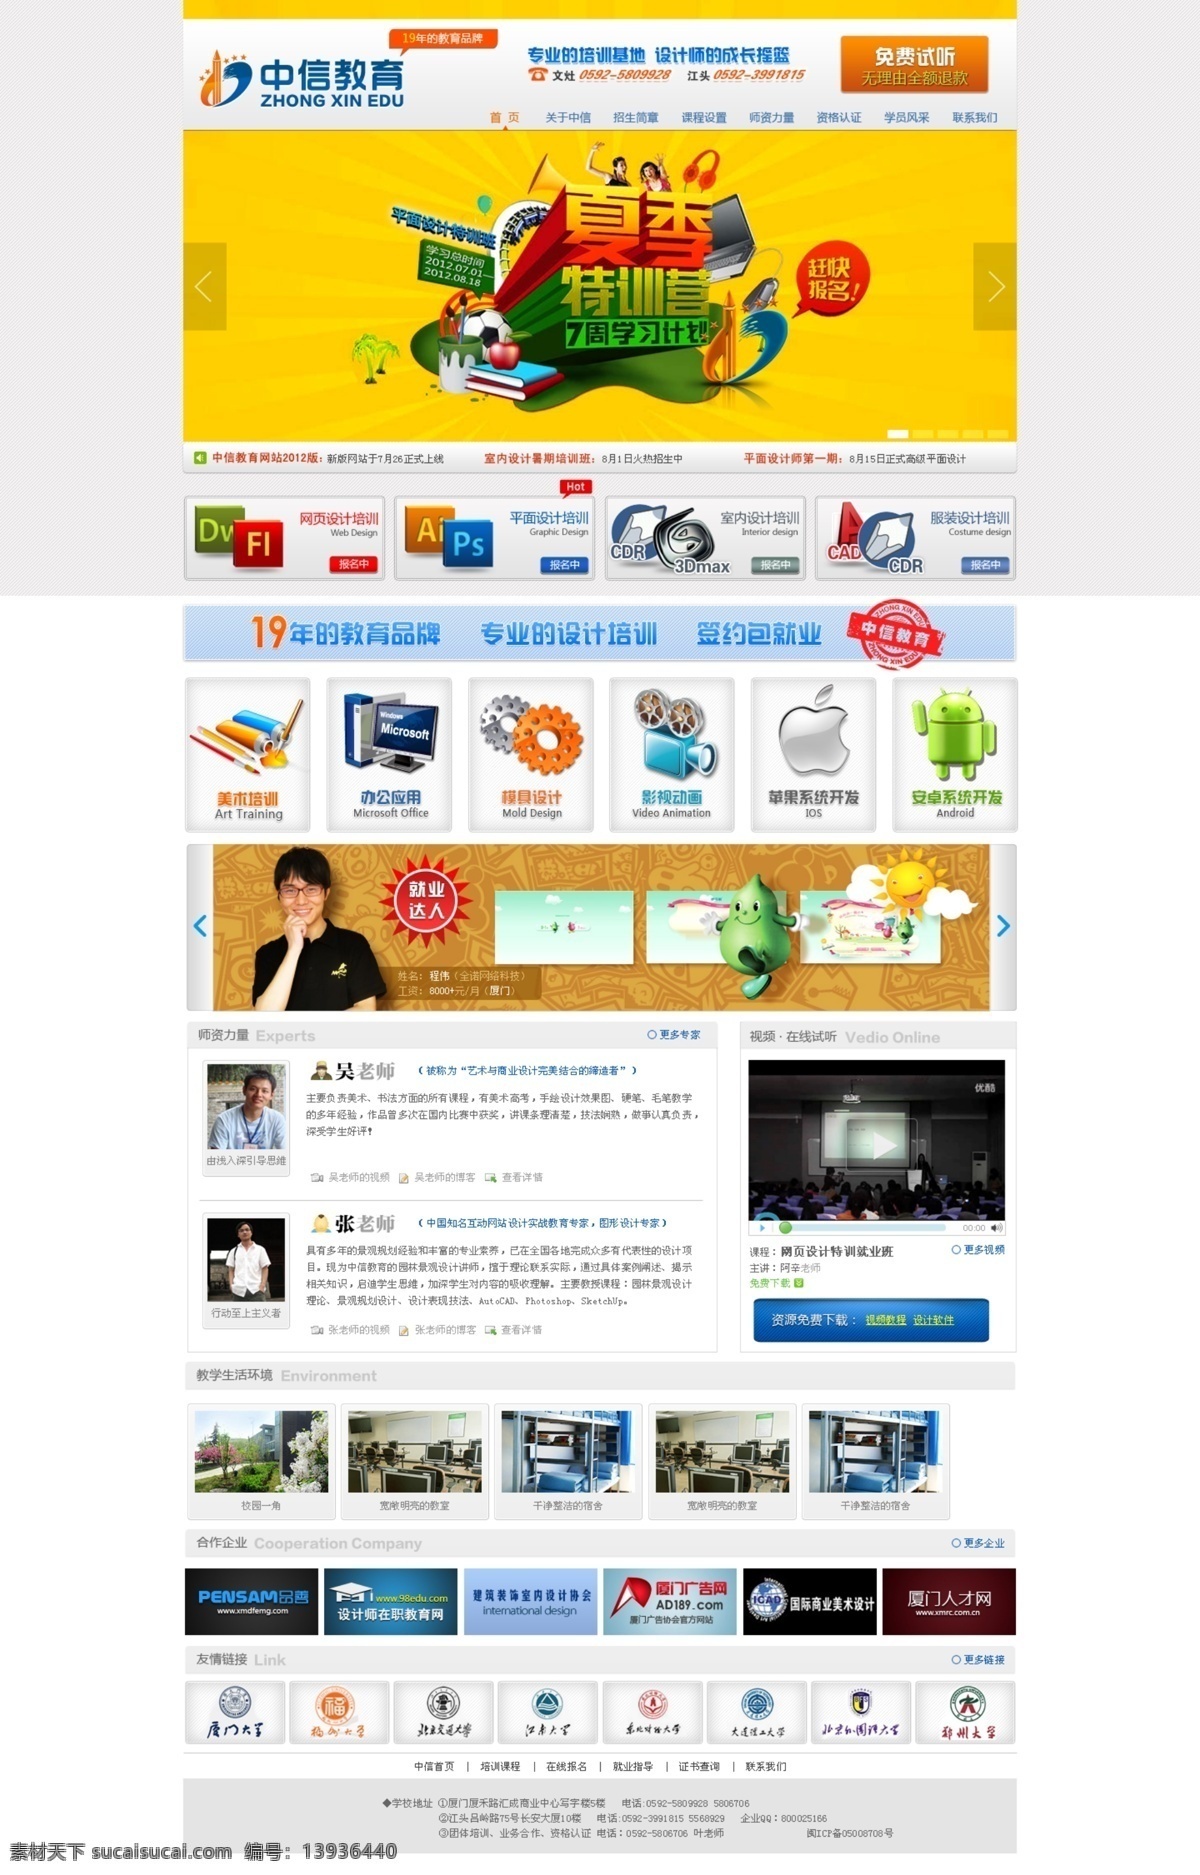 教育网站 设计网站 模板 计算机 软件 培训班 中文模版 网页模板 源文件